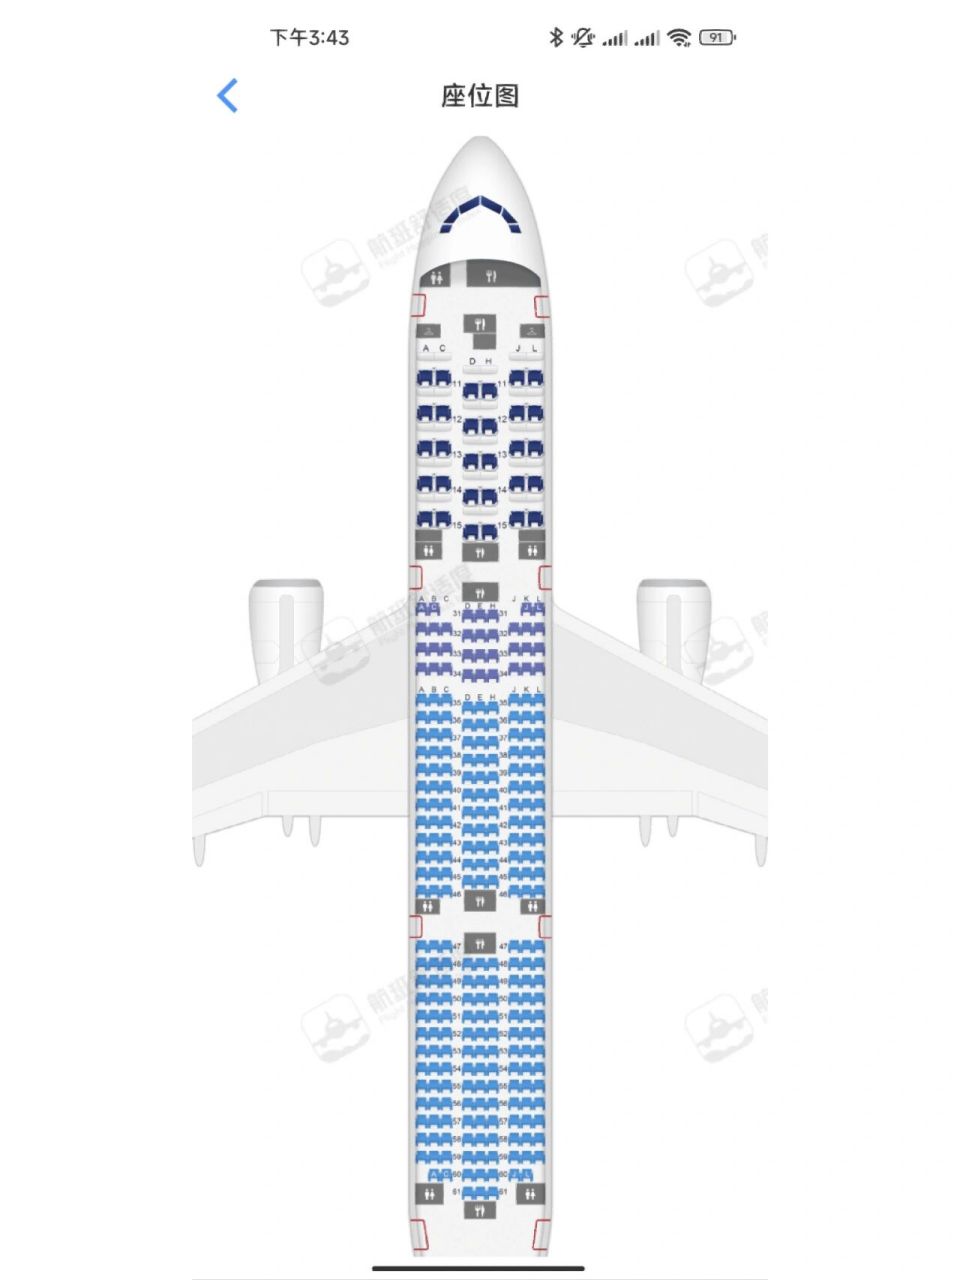 787-9座位图图片